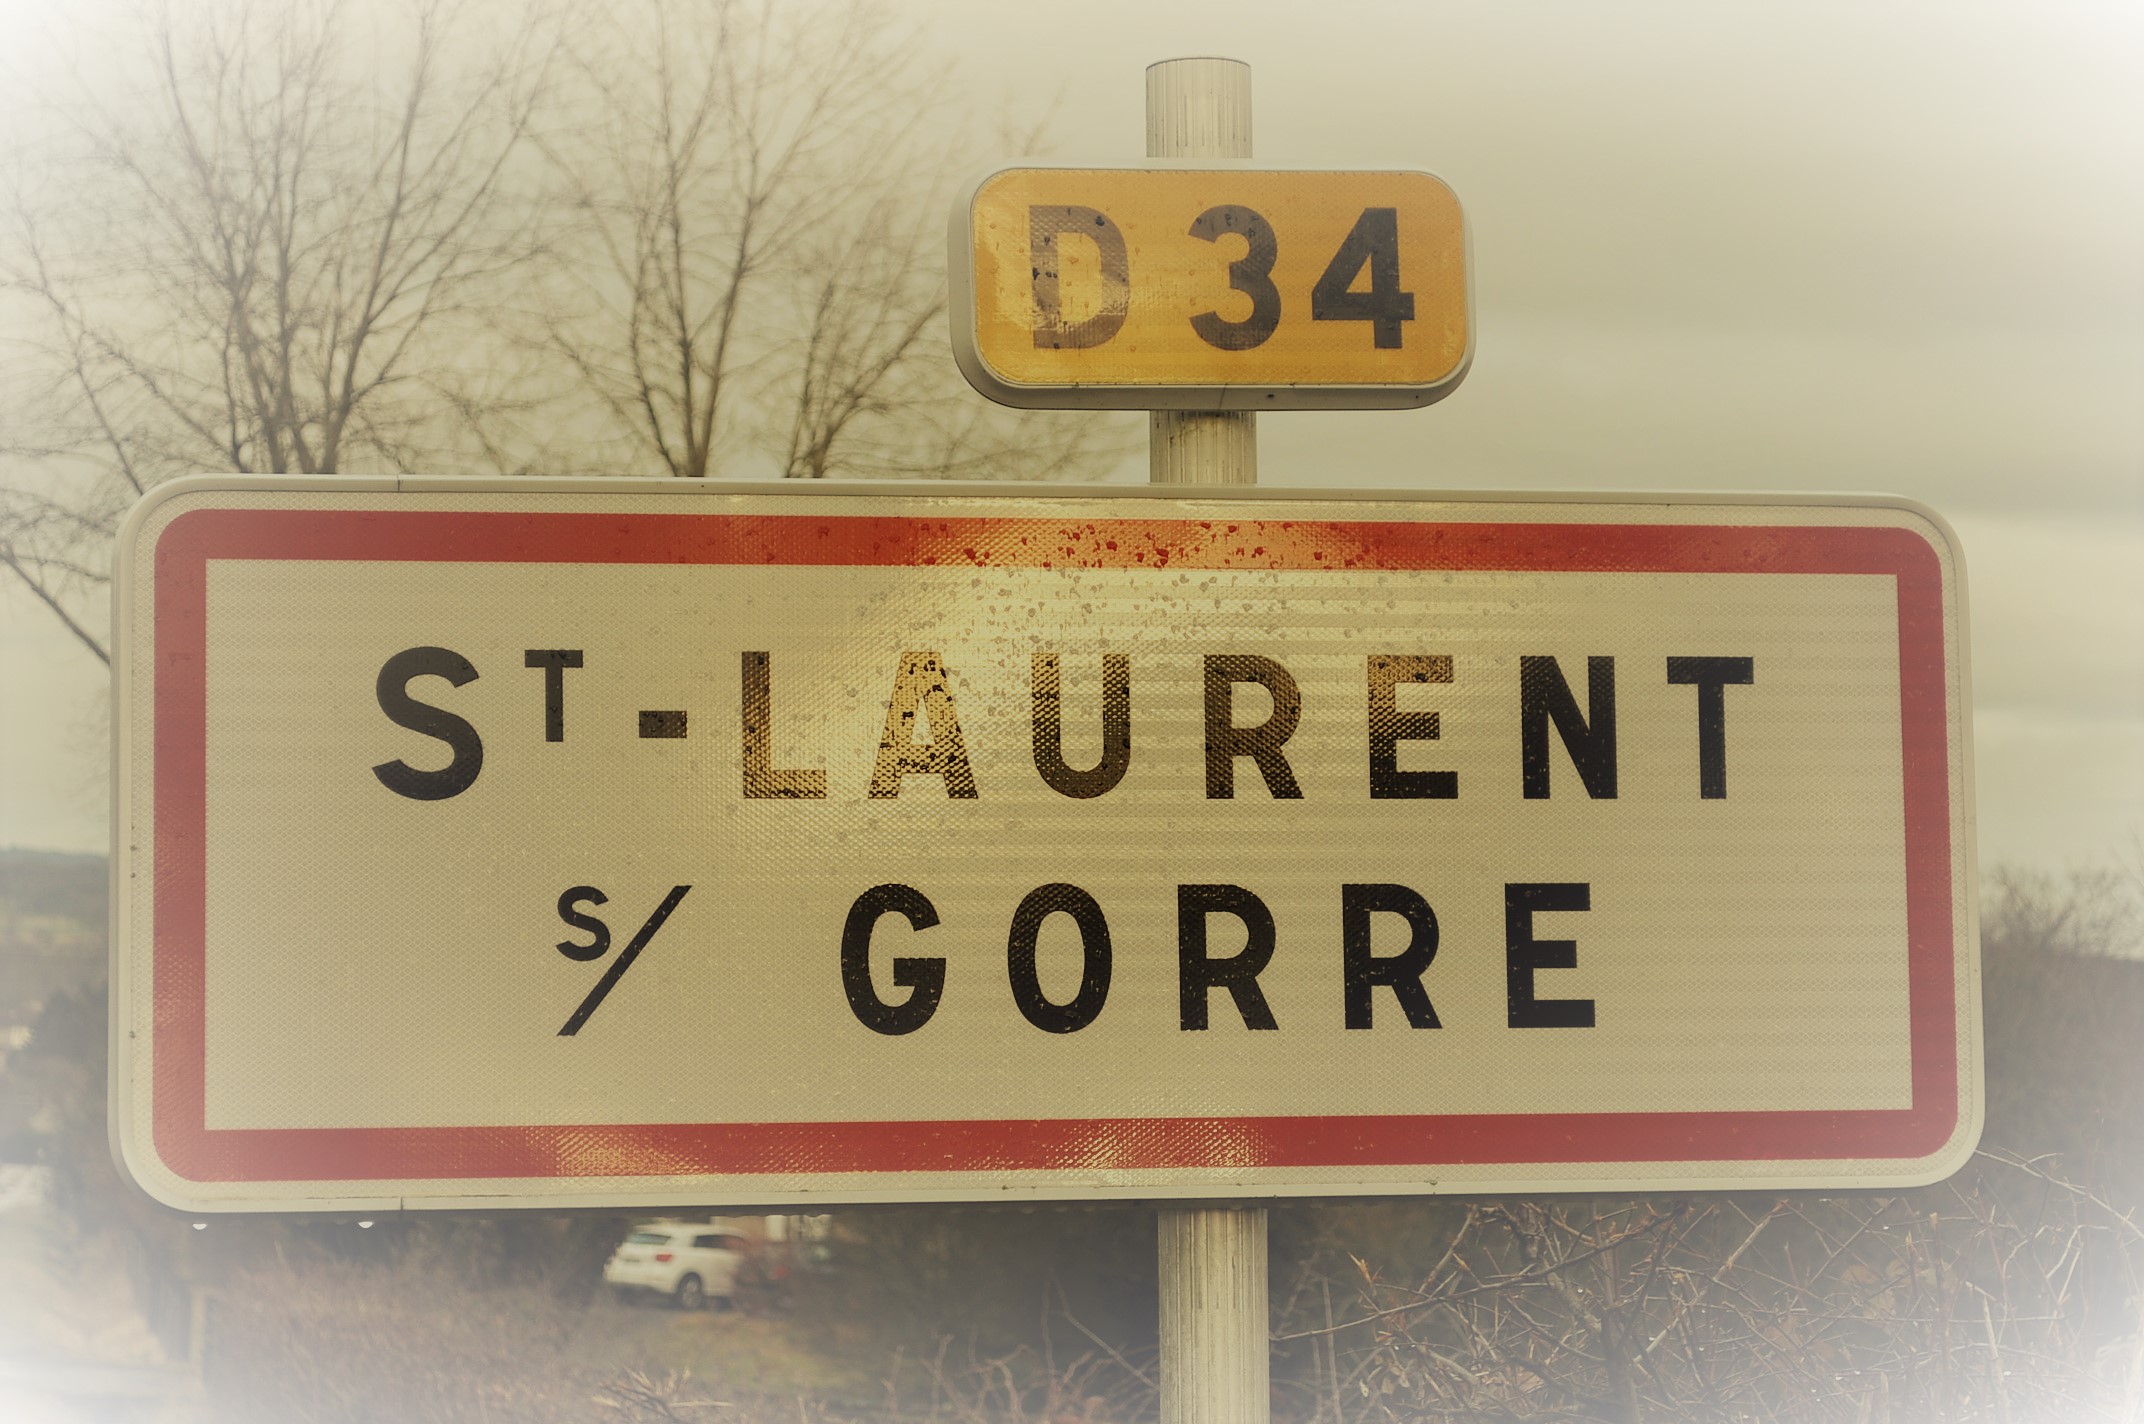 St Laurent sur Gorre